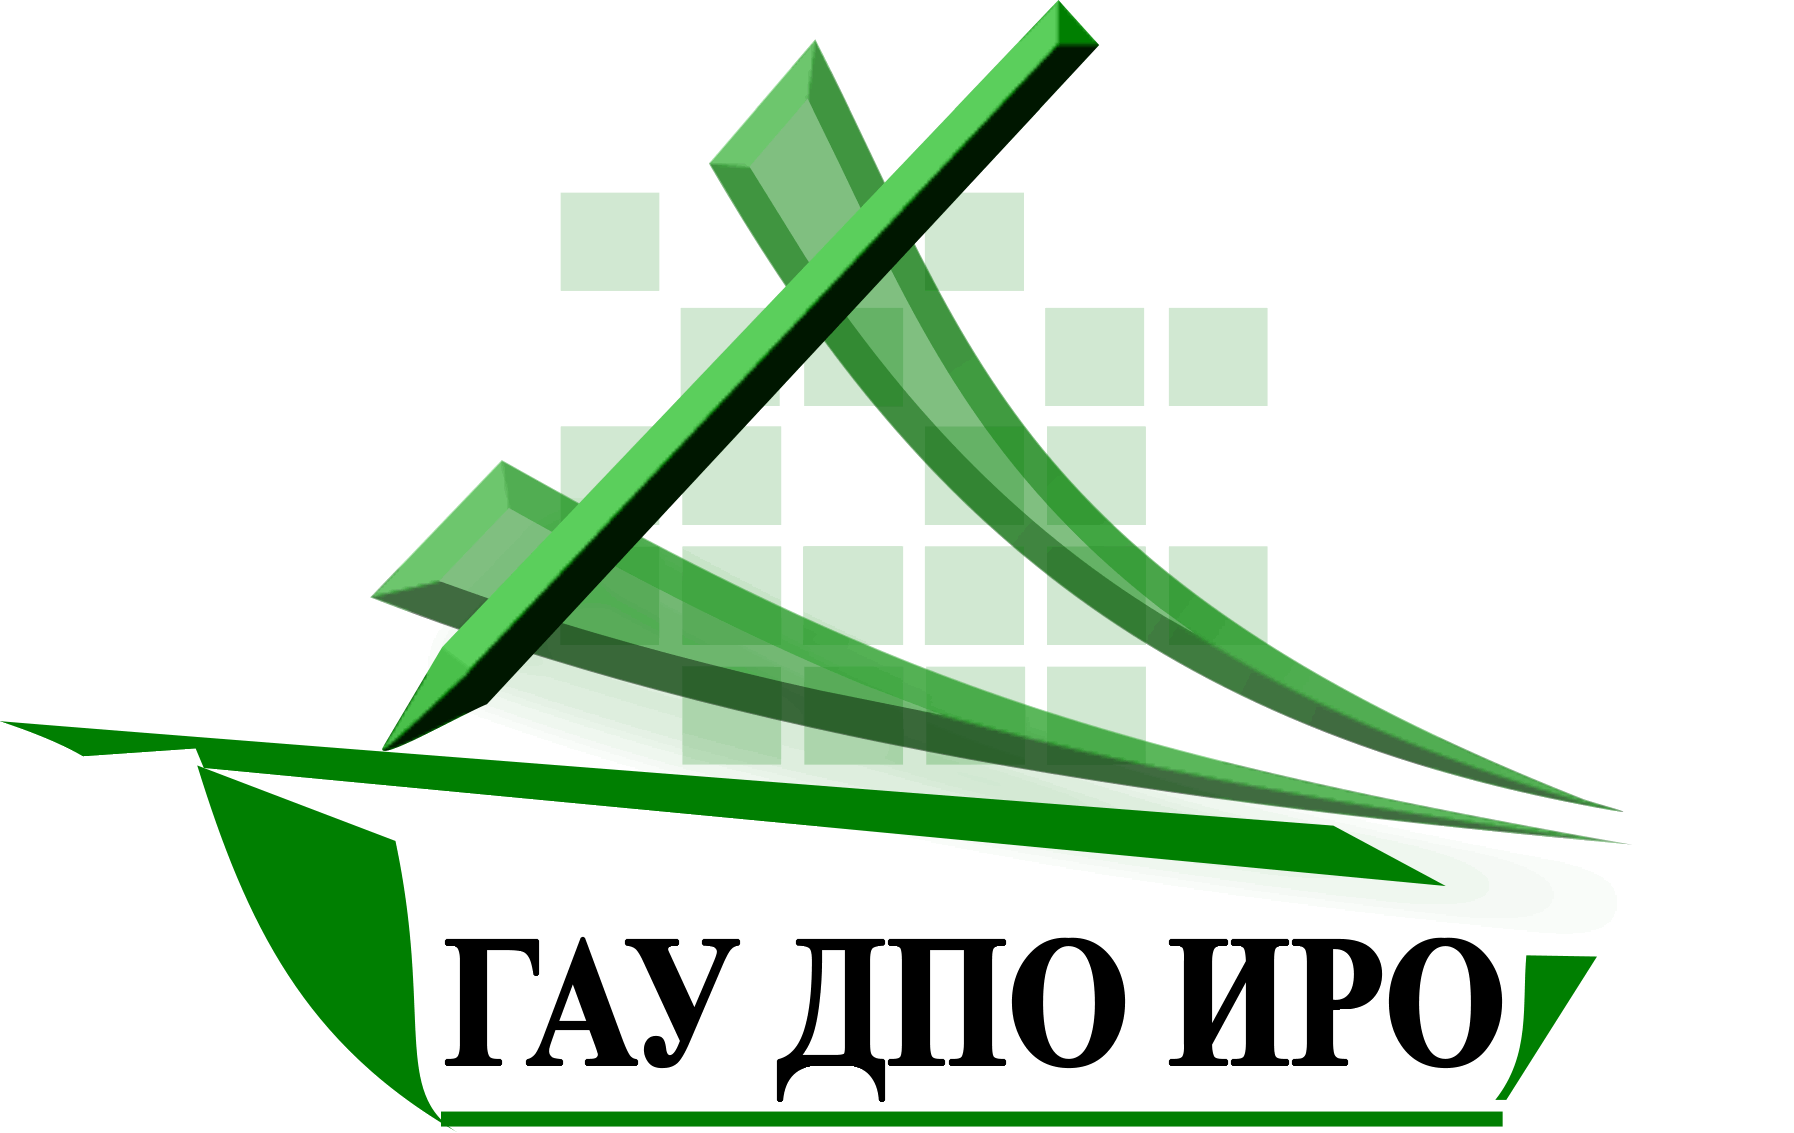 Иро38. ГАУ ДПО ИРО логотип. Институт образования Иркутской области. Иркутск ИРО логотип.